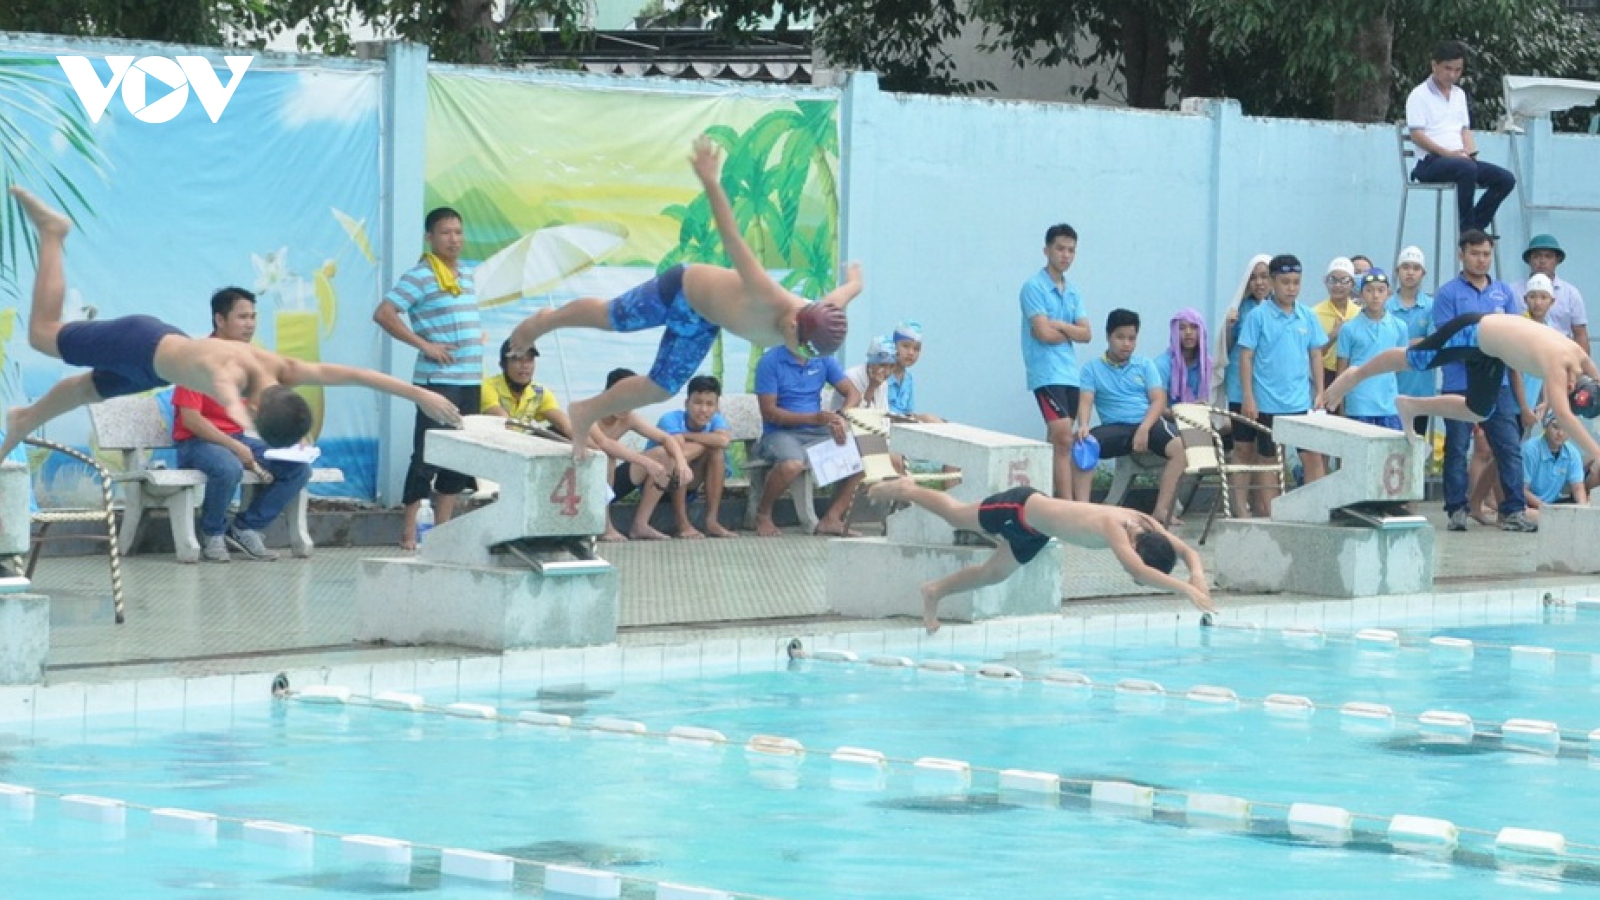 Liên tiếp xảy ra đuối nước ở miền Trung: Cần trang bị kỹ năng bơi lội cho trẻ